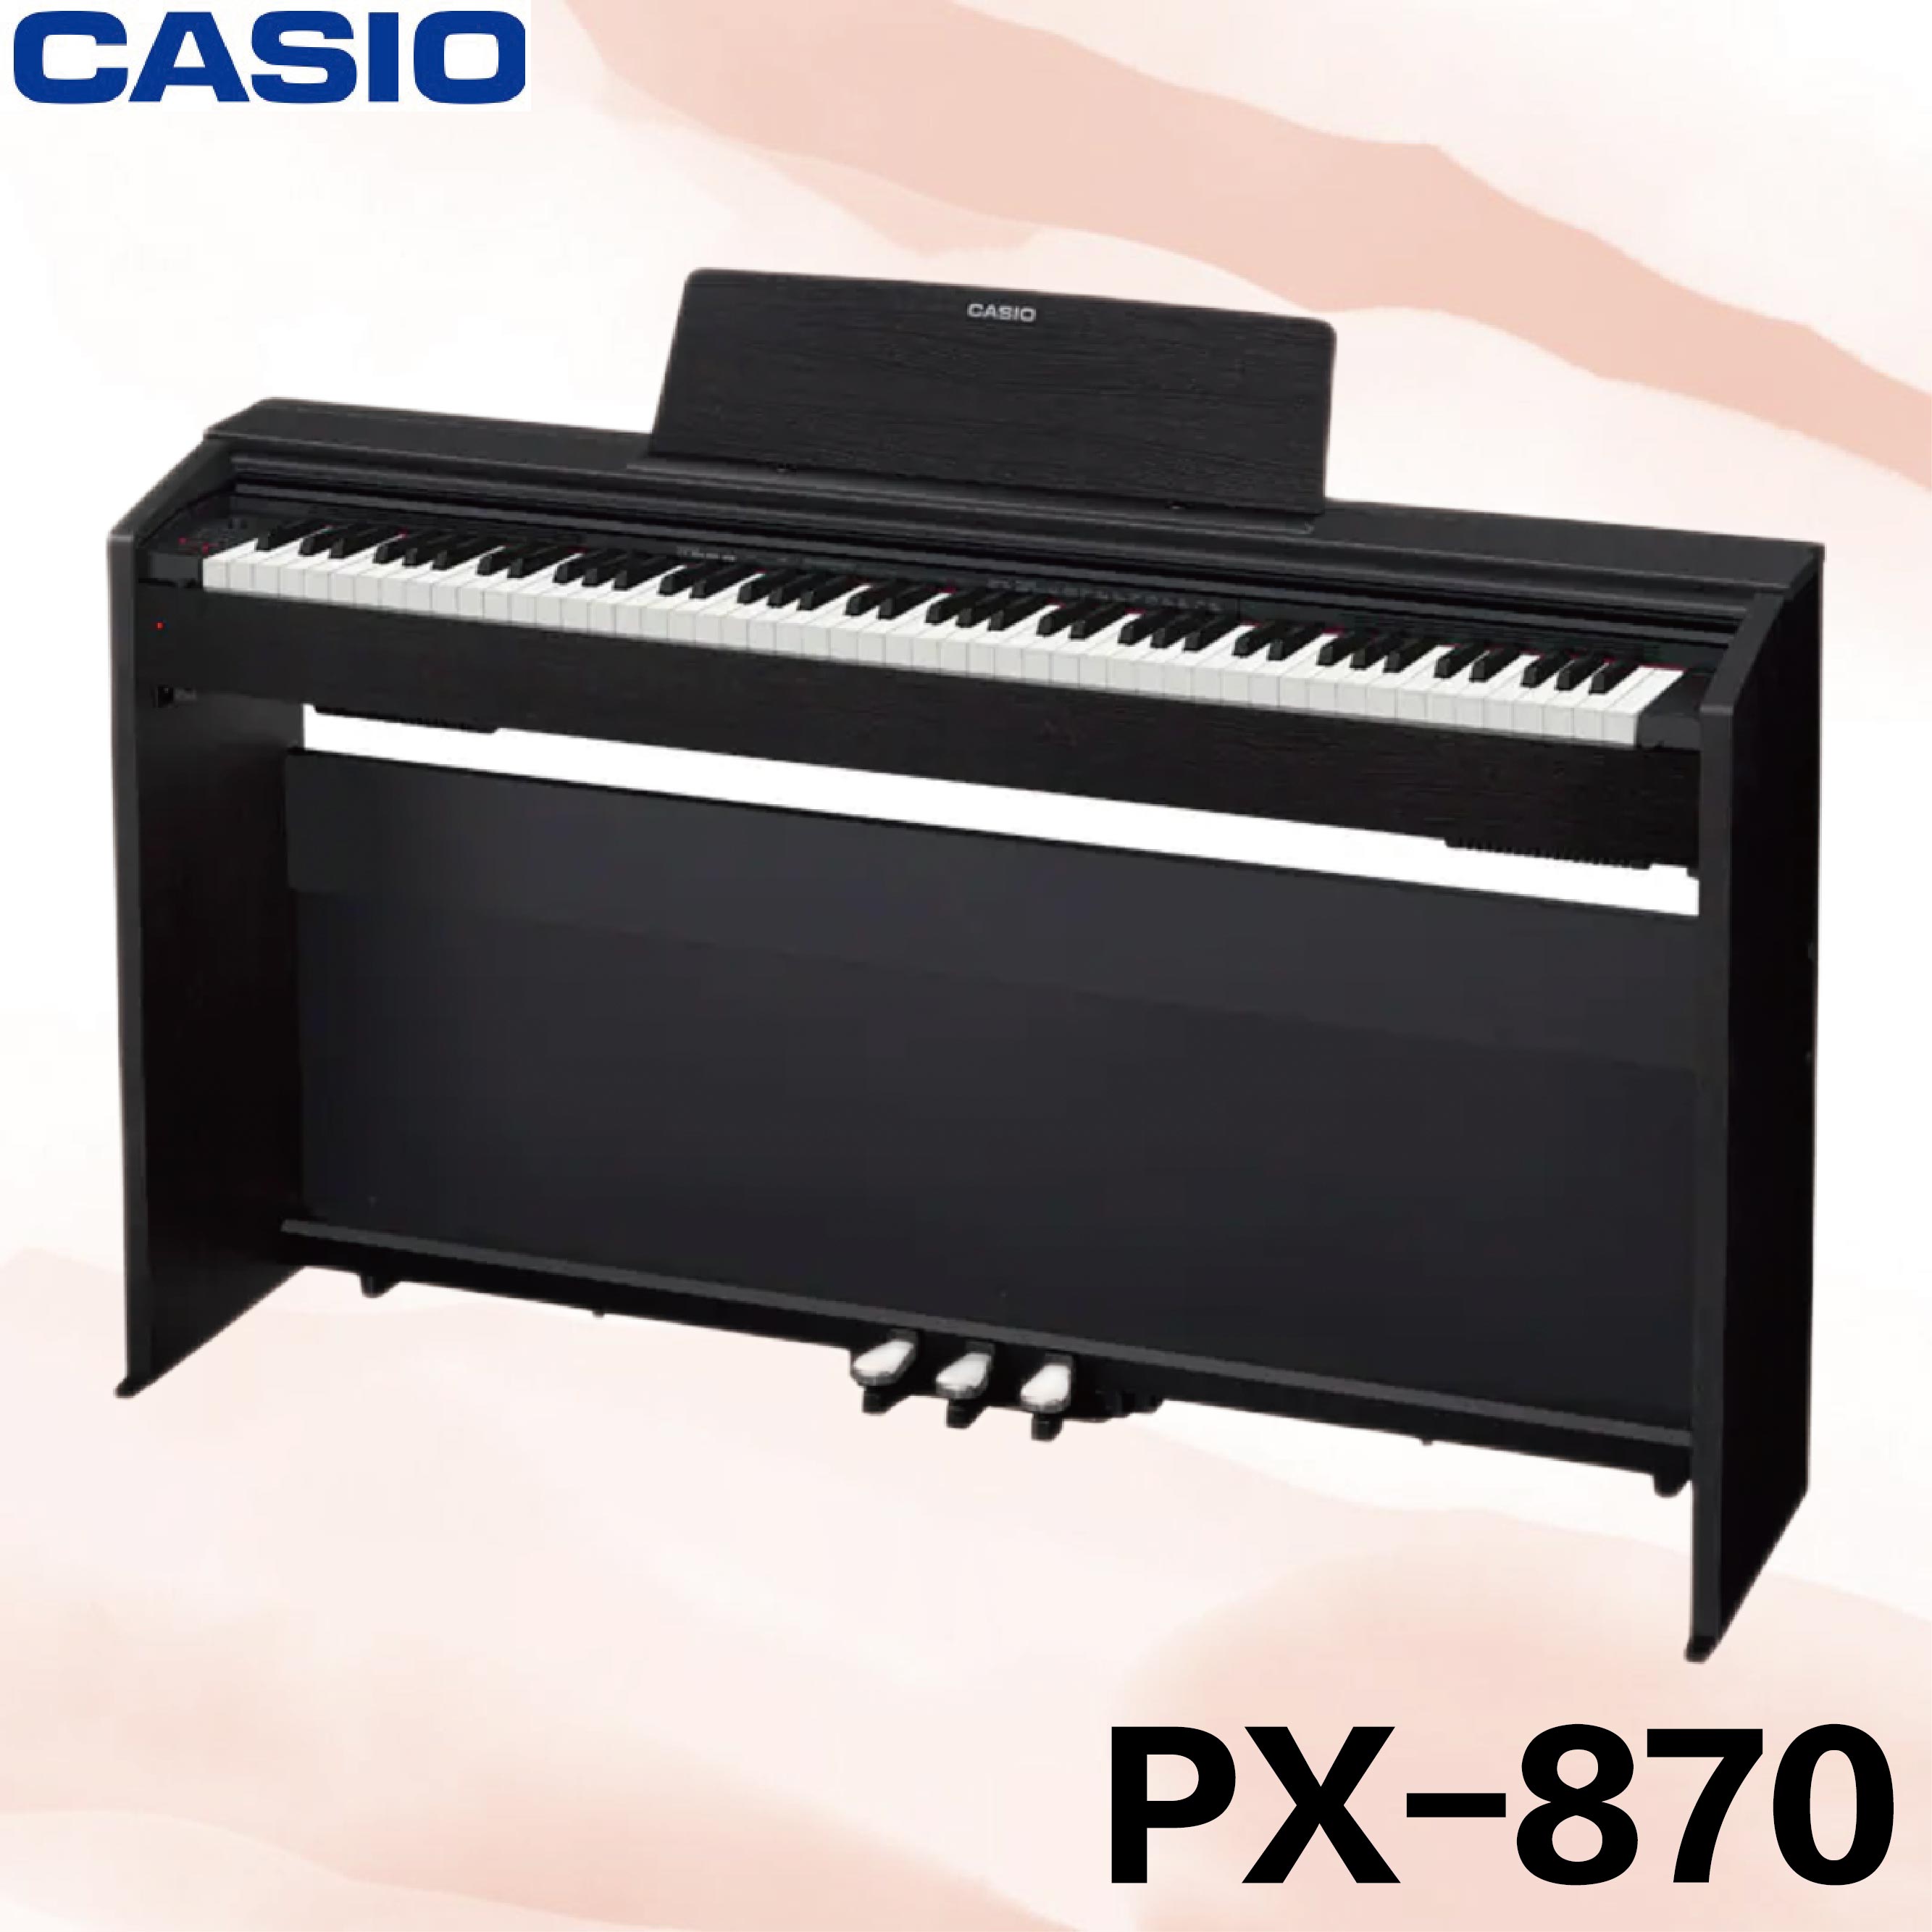 【非凡樂器】CASIO【PX-870】88鍵數位鋼琴/黑色/公司貨保固